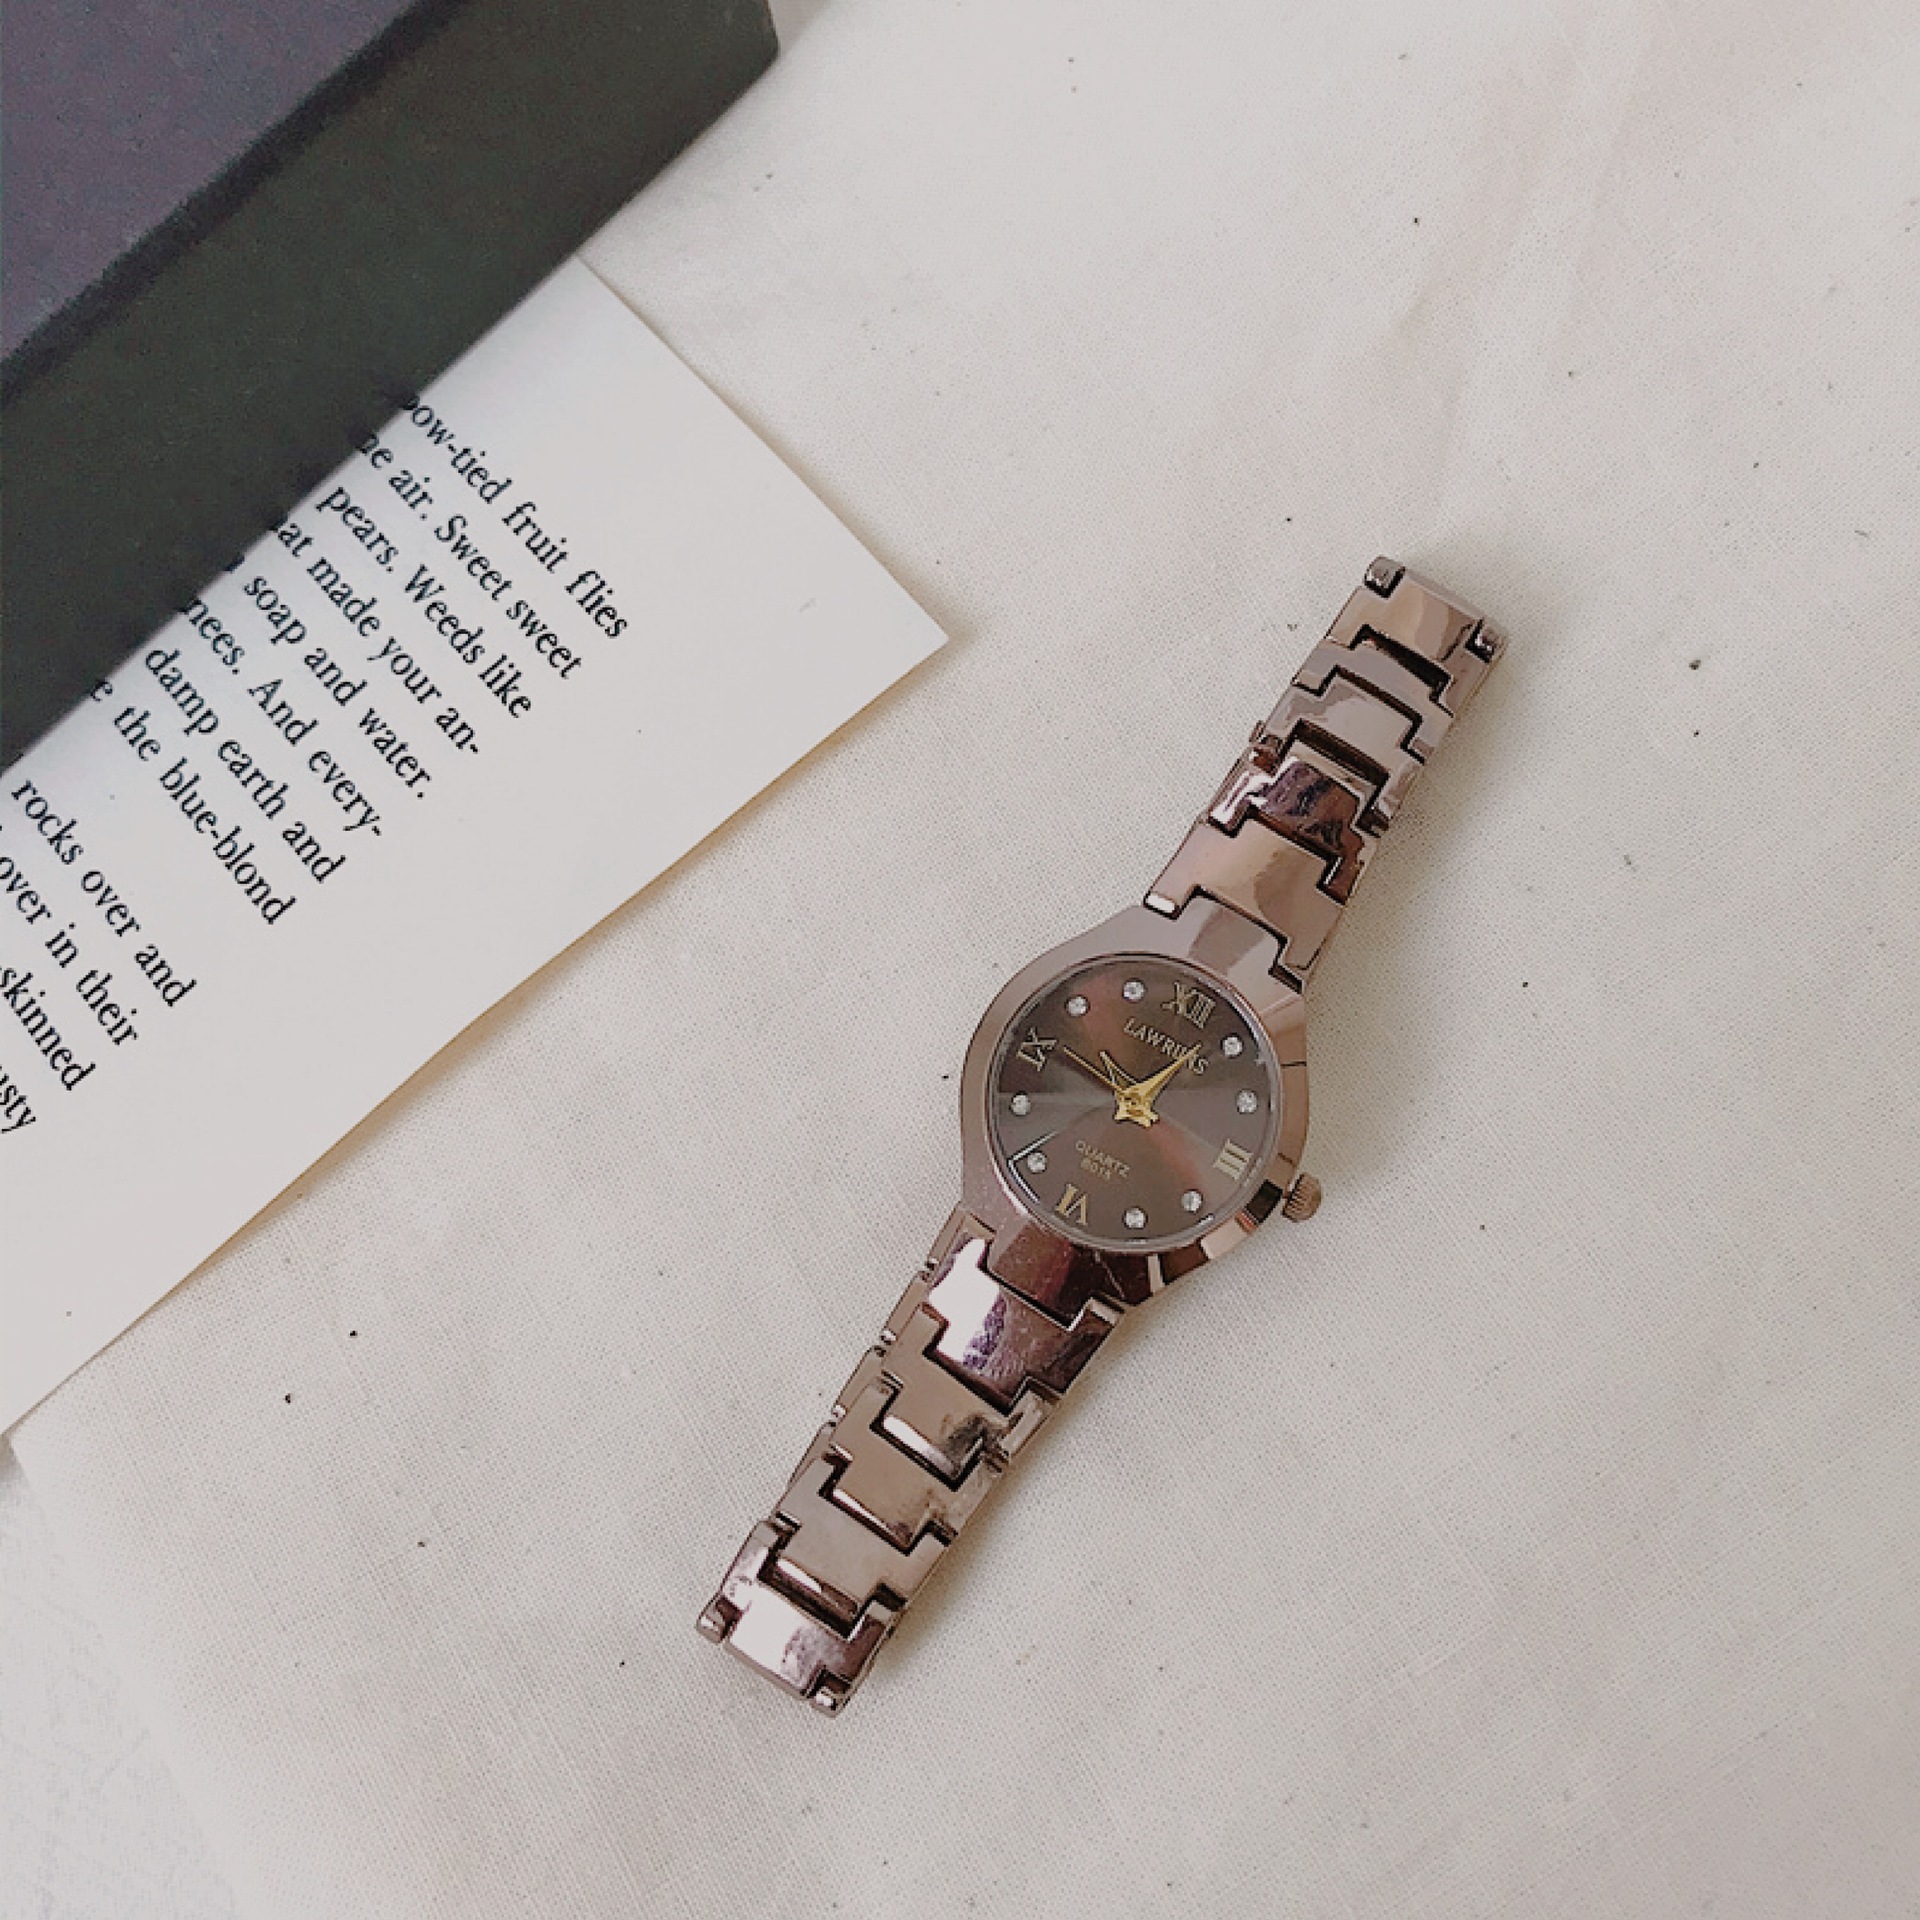 【鎢鋼復古氣質】【鑲鑽小錶盤】vintage復古小錶盤簡約時尚鎢鋼色文藝OL氣質女錶手錶